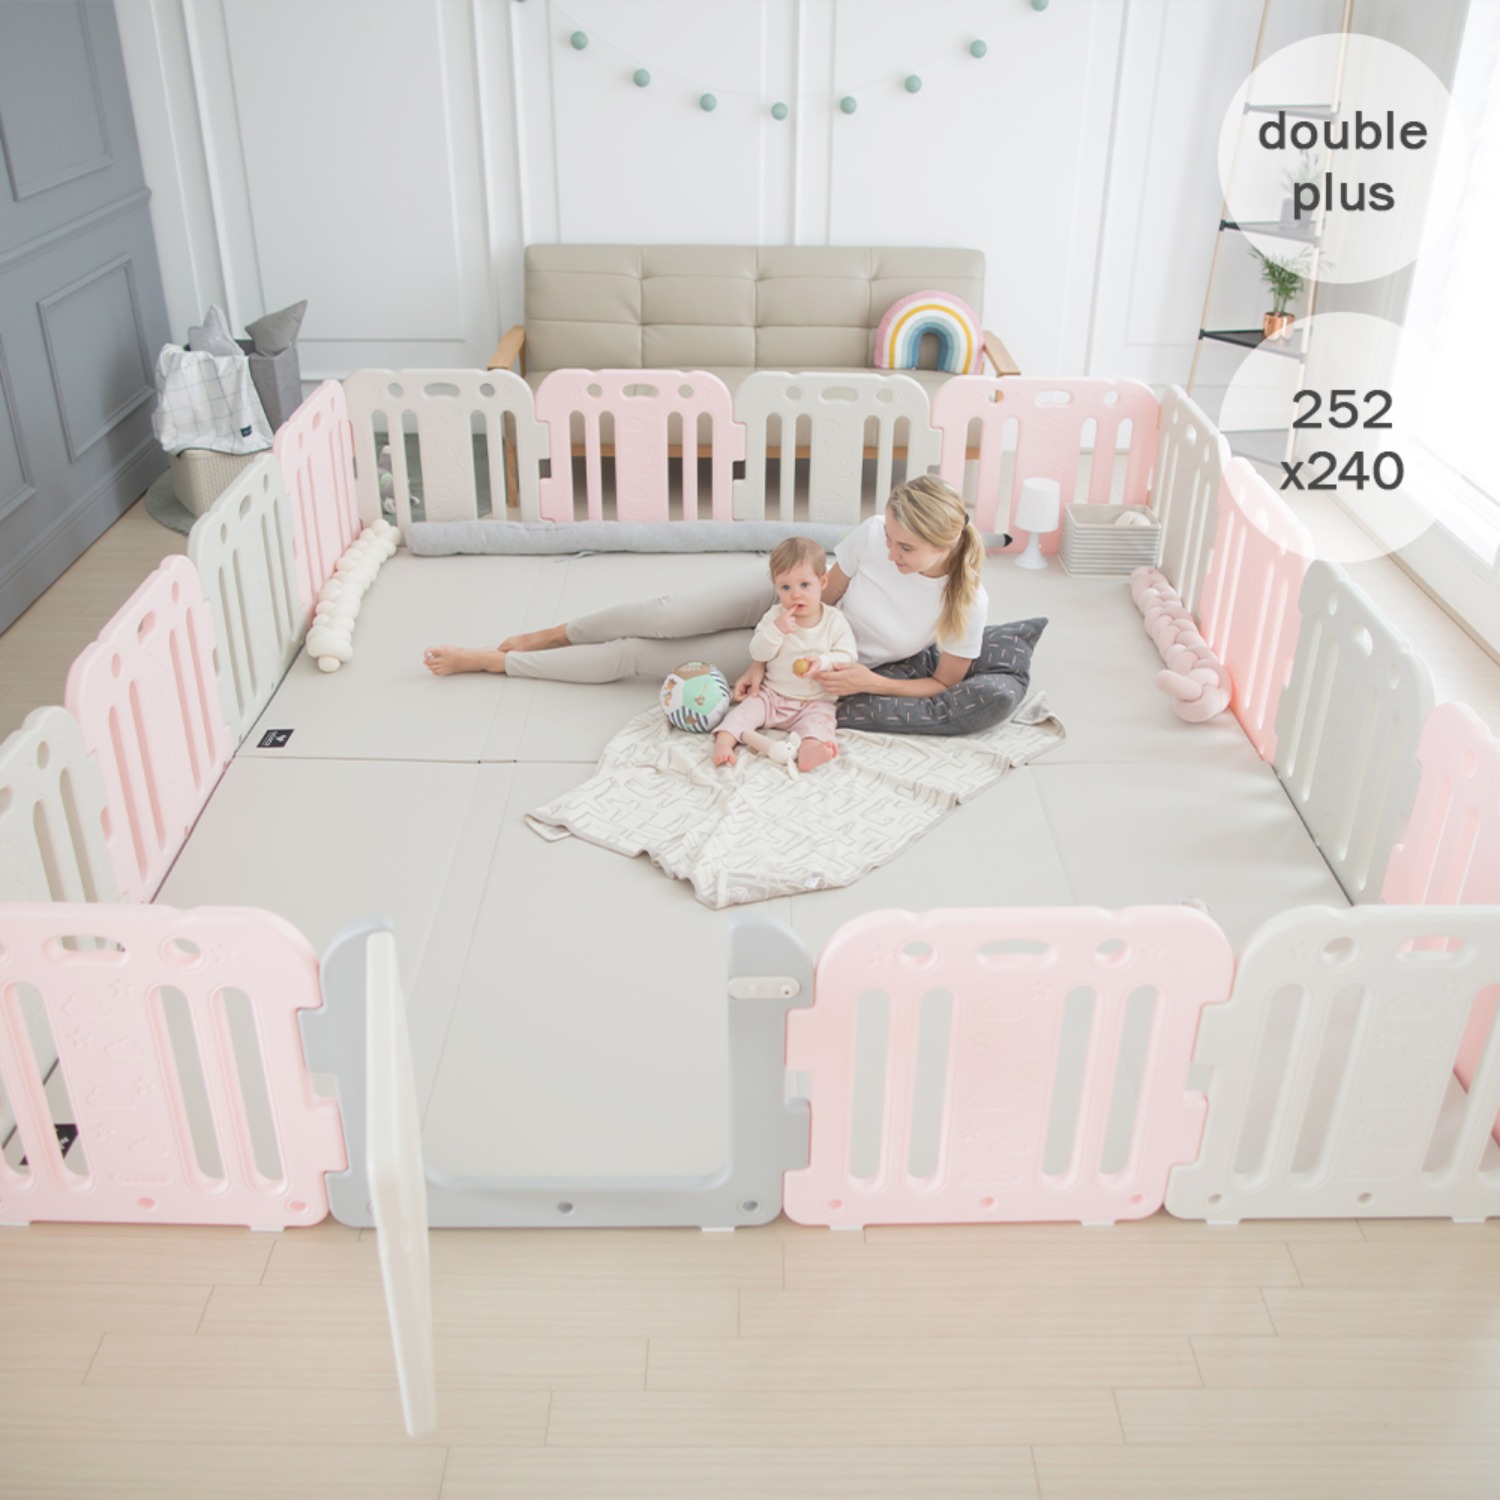 double plus baby room set 252 x 240